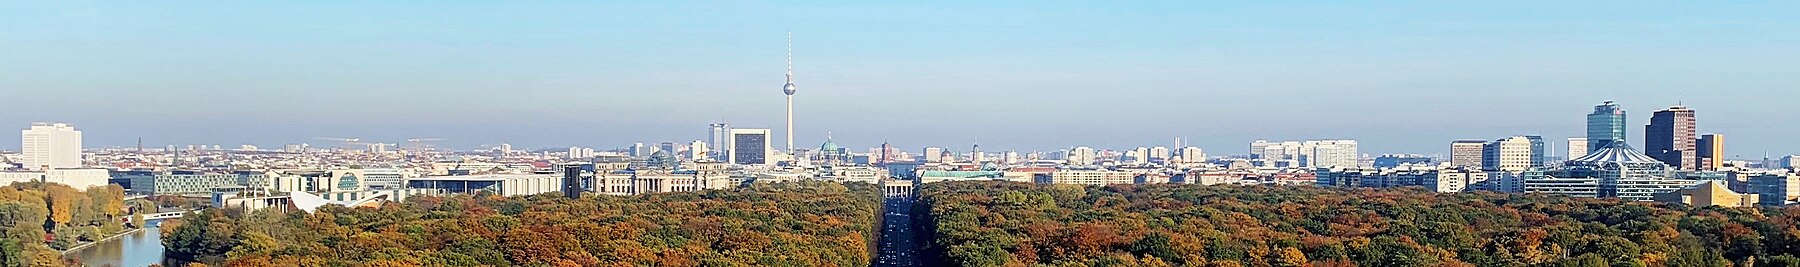 Skyline of Berlin in 2021